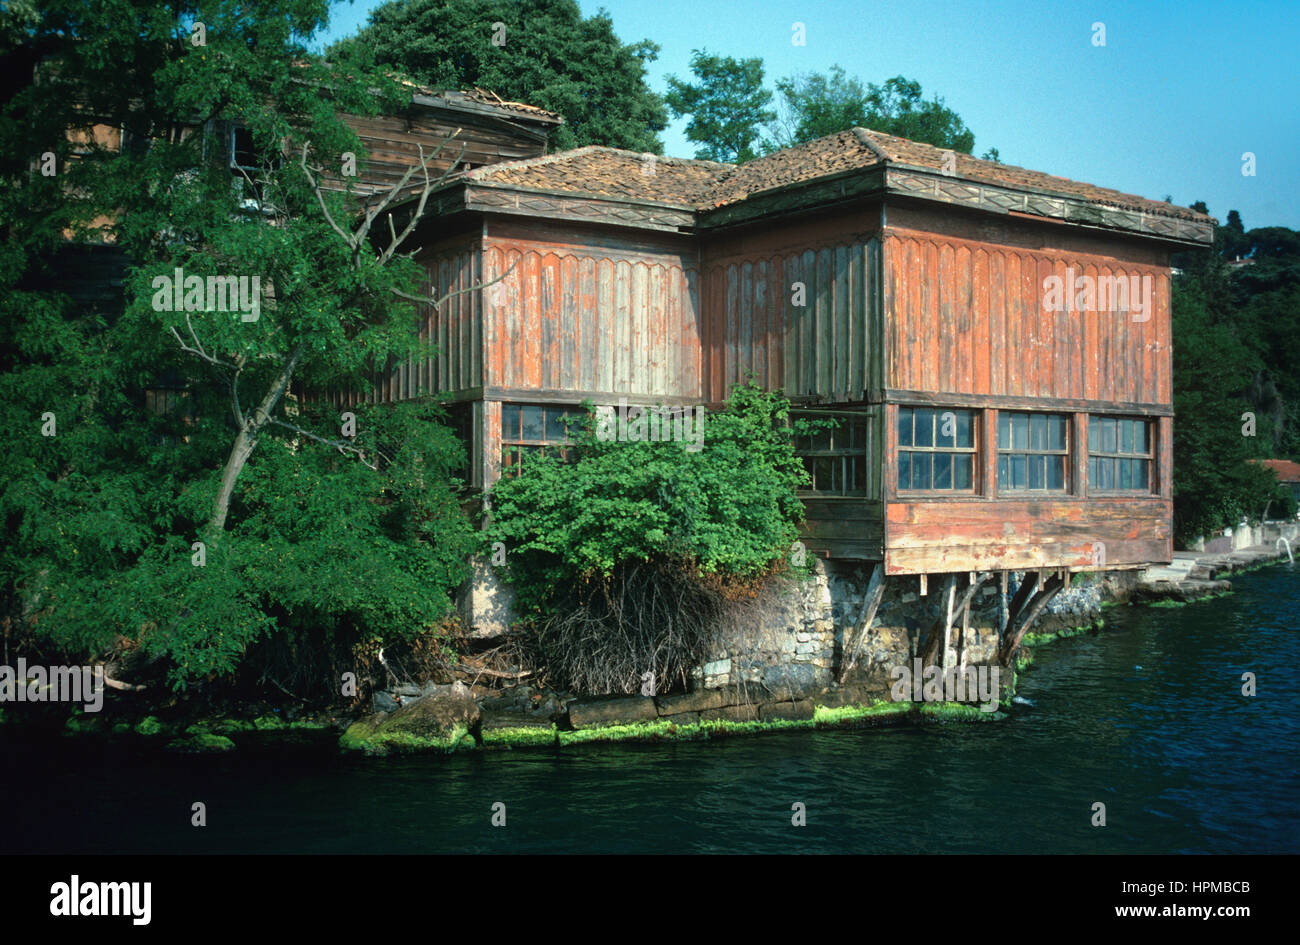 Der Köprülü Yali (1699), die älteste erhaltene hölzerne Waterfront Villa oder Yali am asiatischen Ufer des Bosporus Meerenge-Istanbul-Türkei. Das Holzhaus wurde von Grand türkischen osmanischen Großwesir Amcazade Köprülü Hüseyin Pascha gebaut. Stockfoto